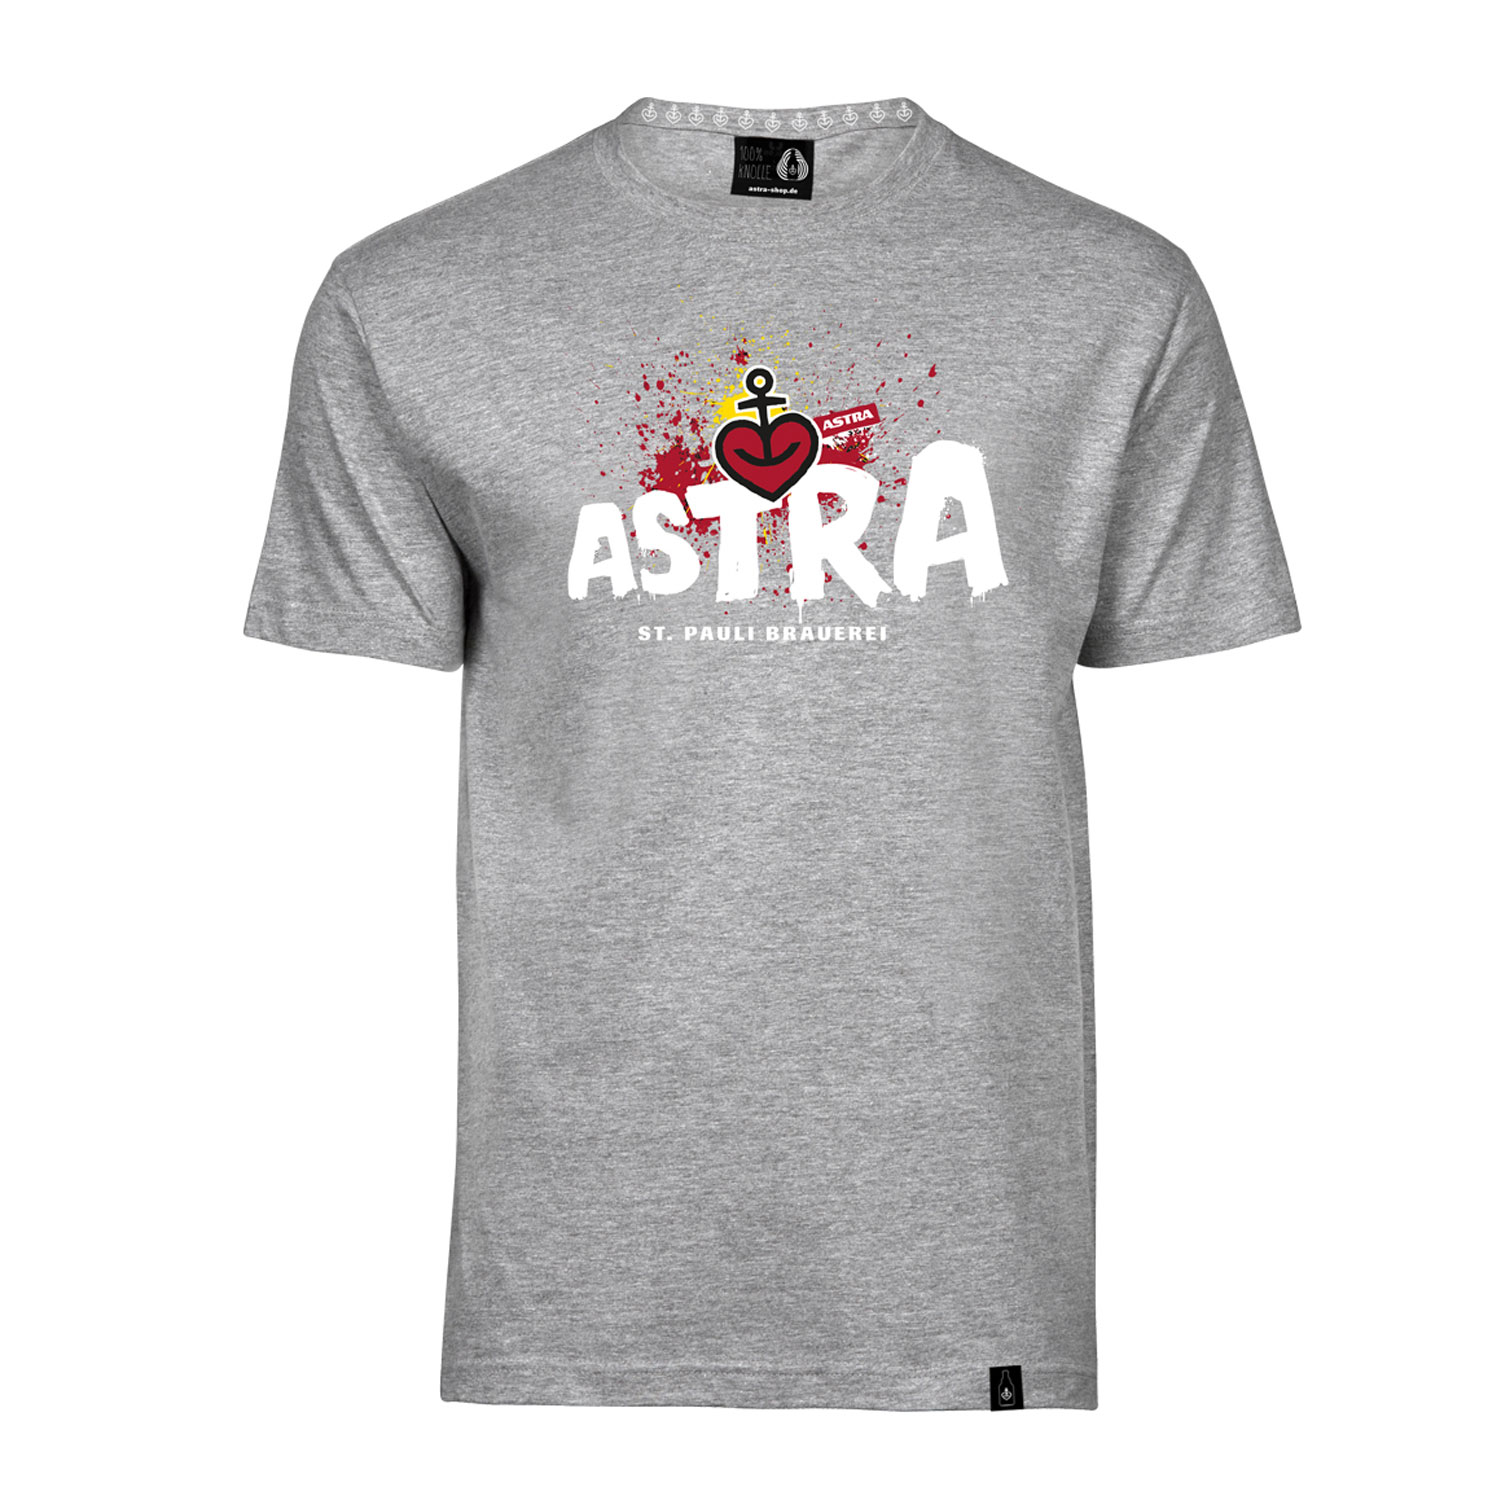 Herren T-Shirt „Astra St. Pauli-Brauerei“, grau